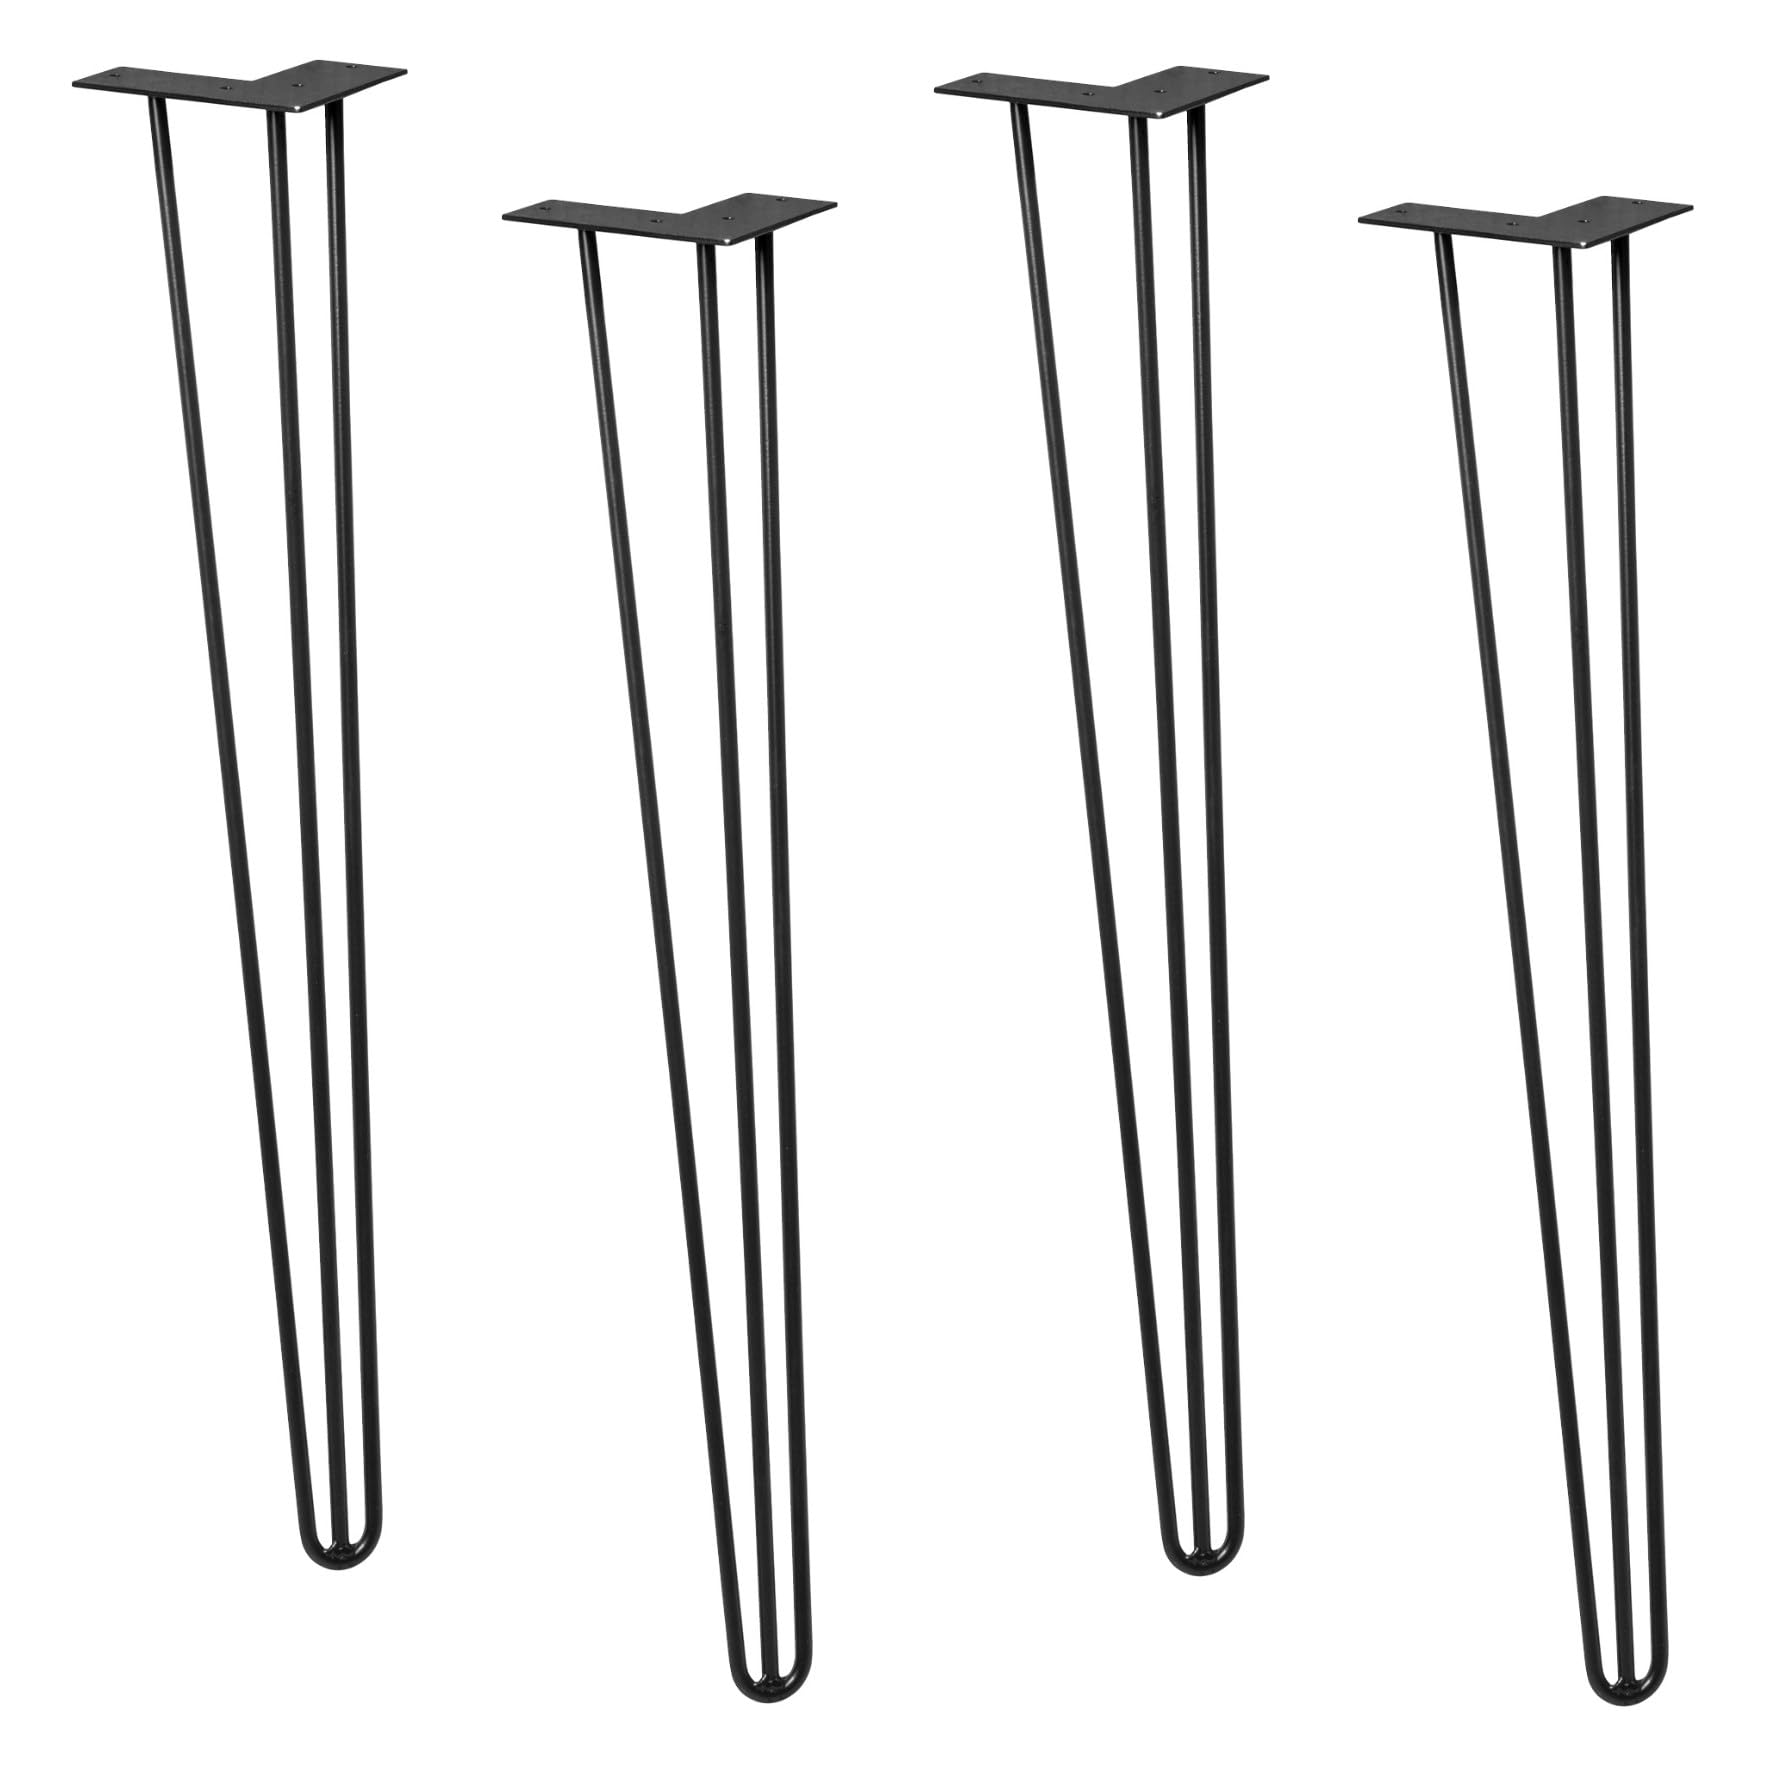 Wagner Möbelbeine/Tischbeine/Möbelfüße - Hairpin Legs 4er Set - Retro - Stahl pulverbeschichtet schwarz, 12 x 12 x 71 cm, Beine konisch/schräg verlaufend, integrierte Anschraubplatte - 12827104